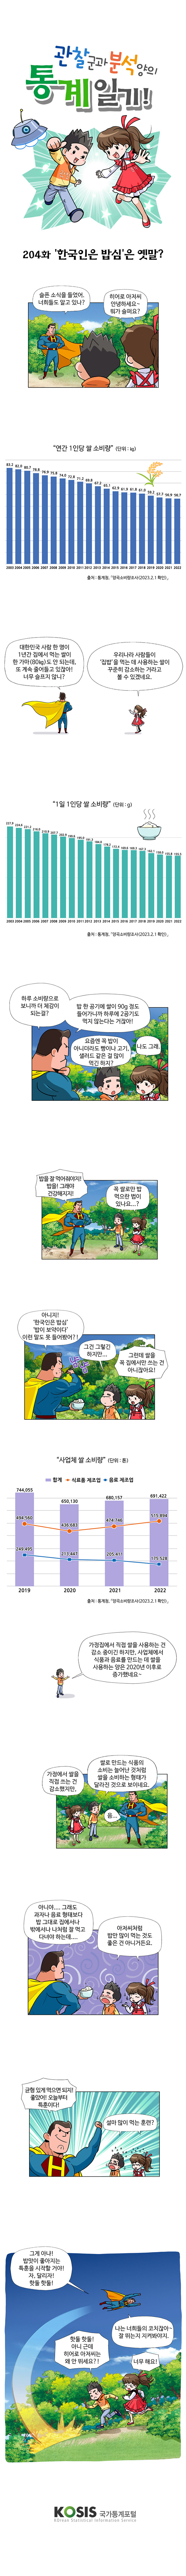 제204화 :'한국인은 밥심'은 옛말?